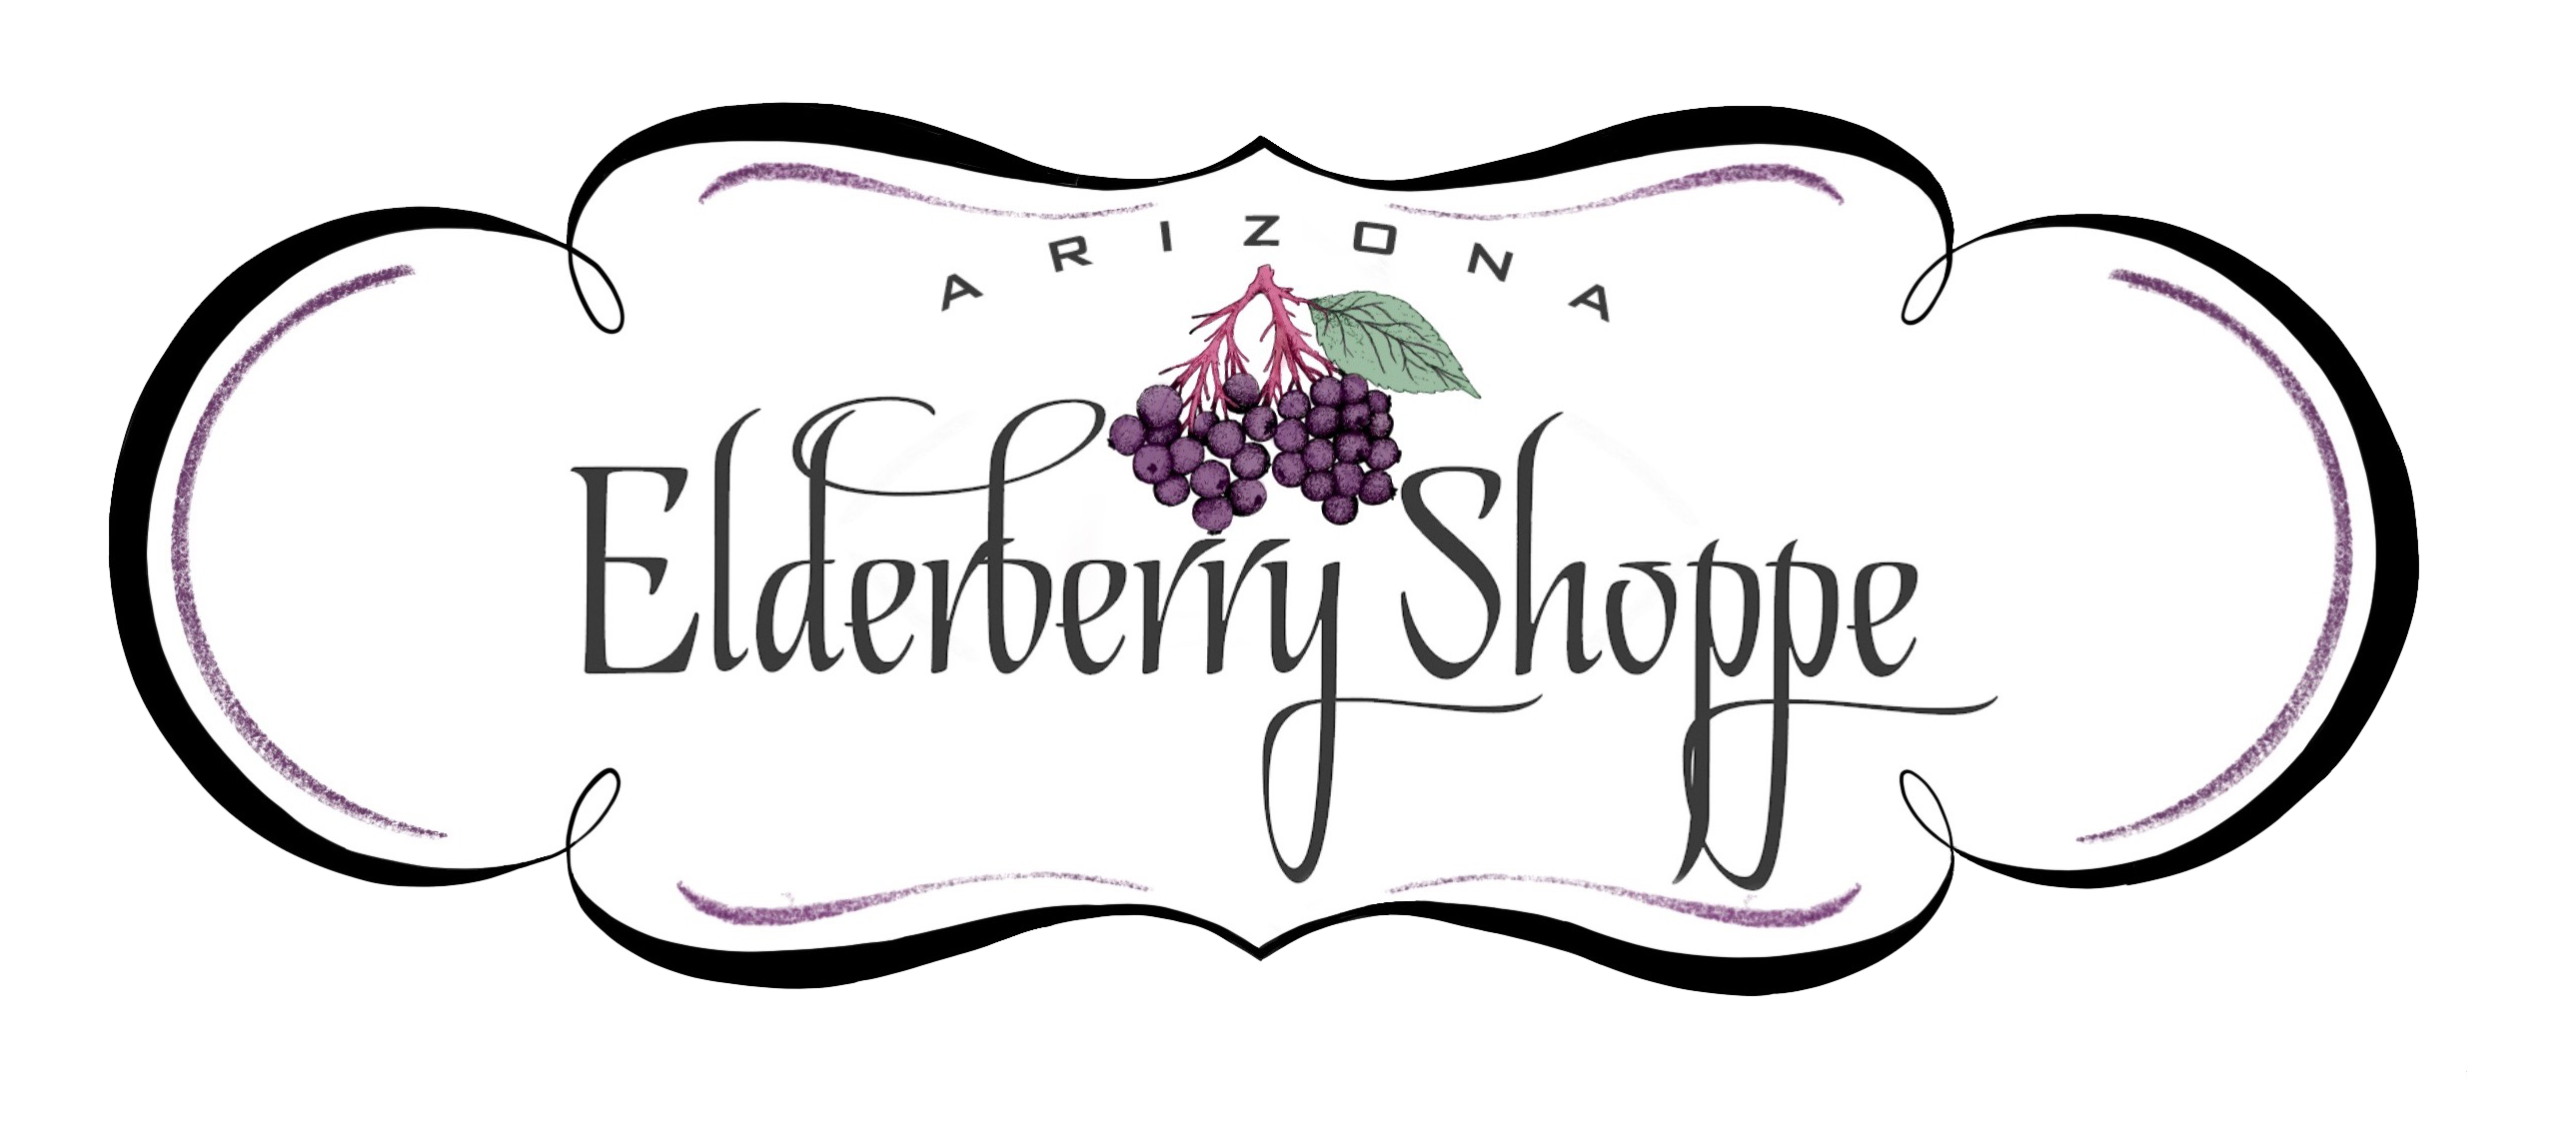 Arizona Elderberry Shoppe